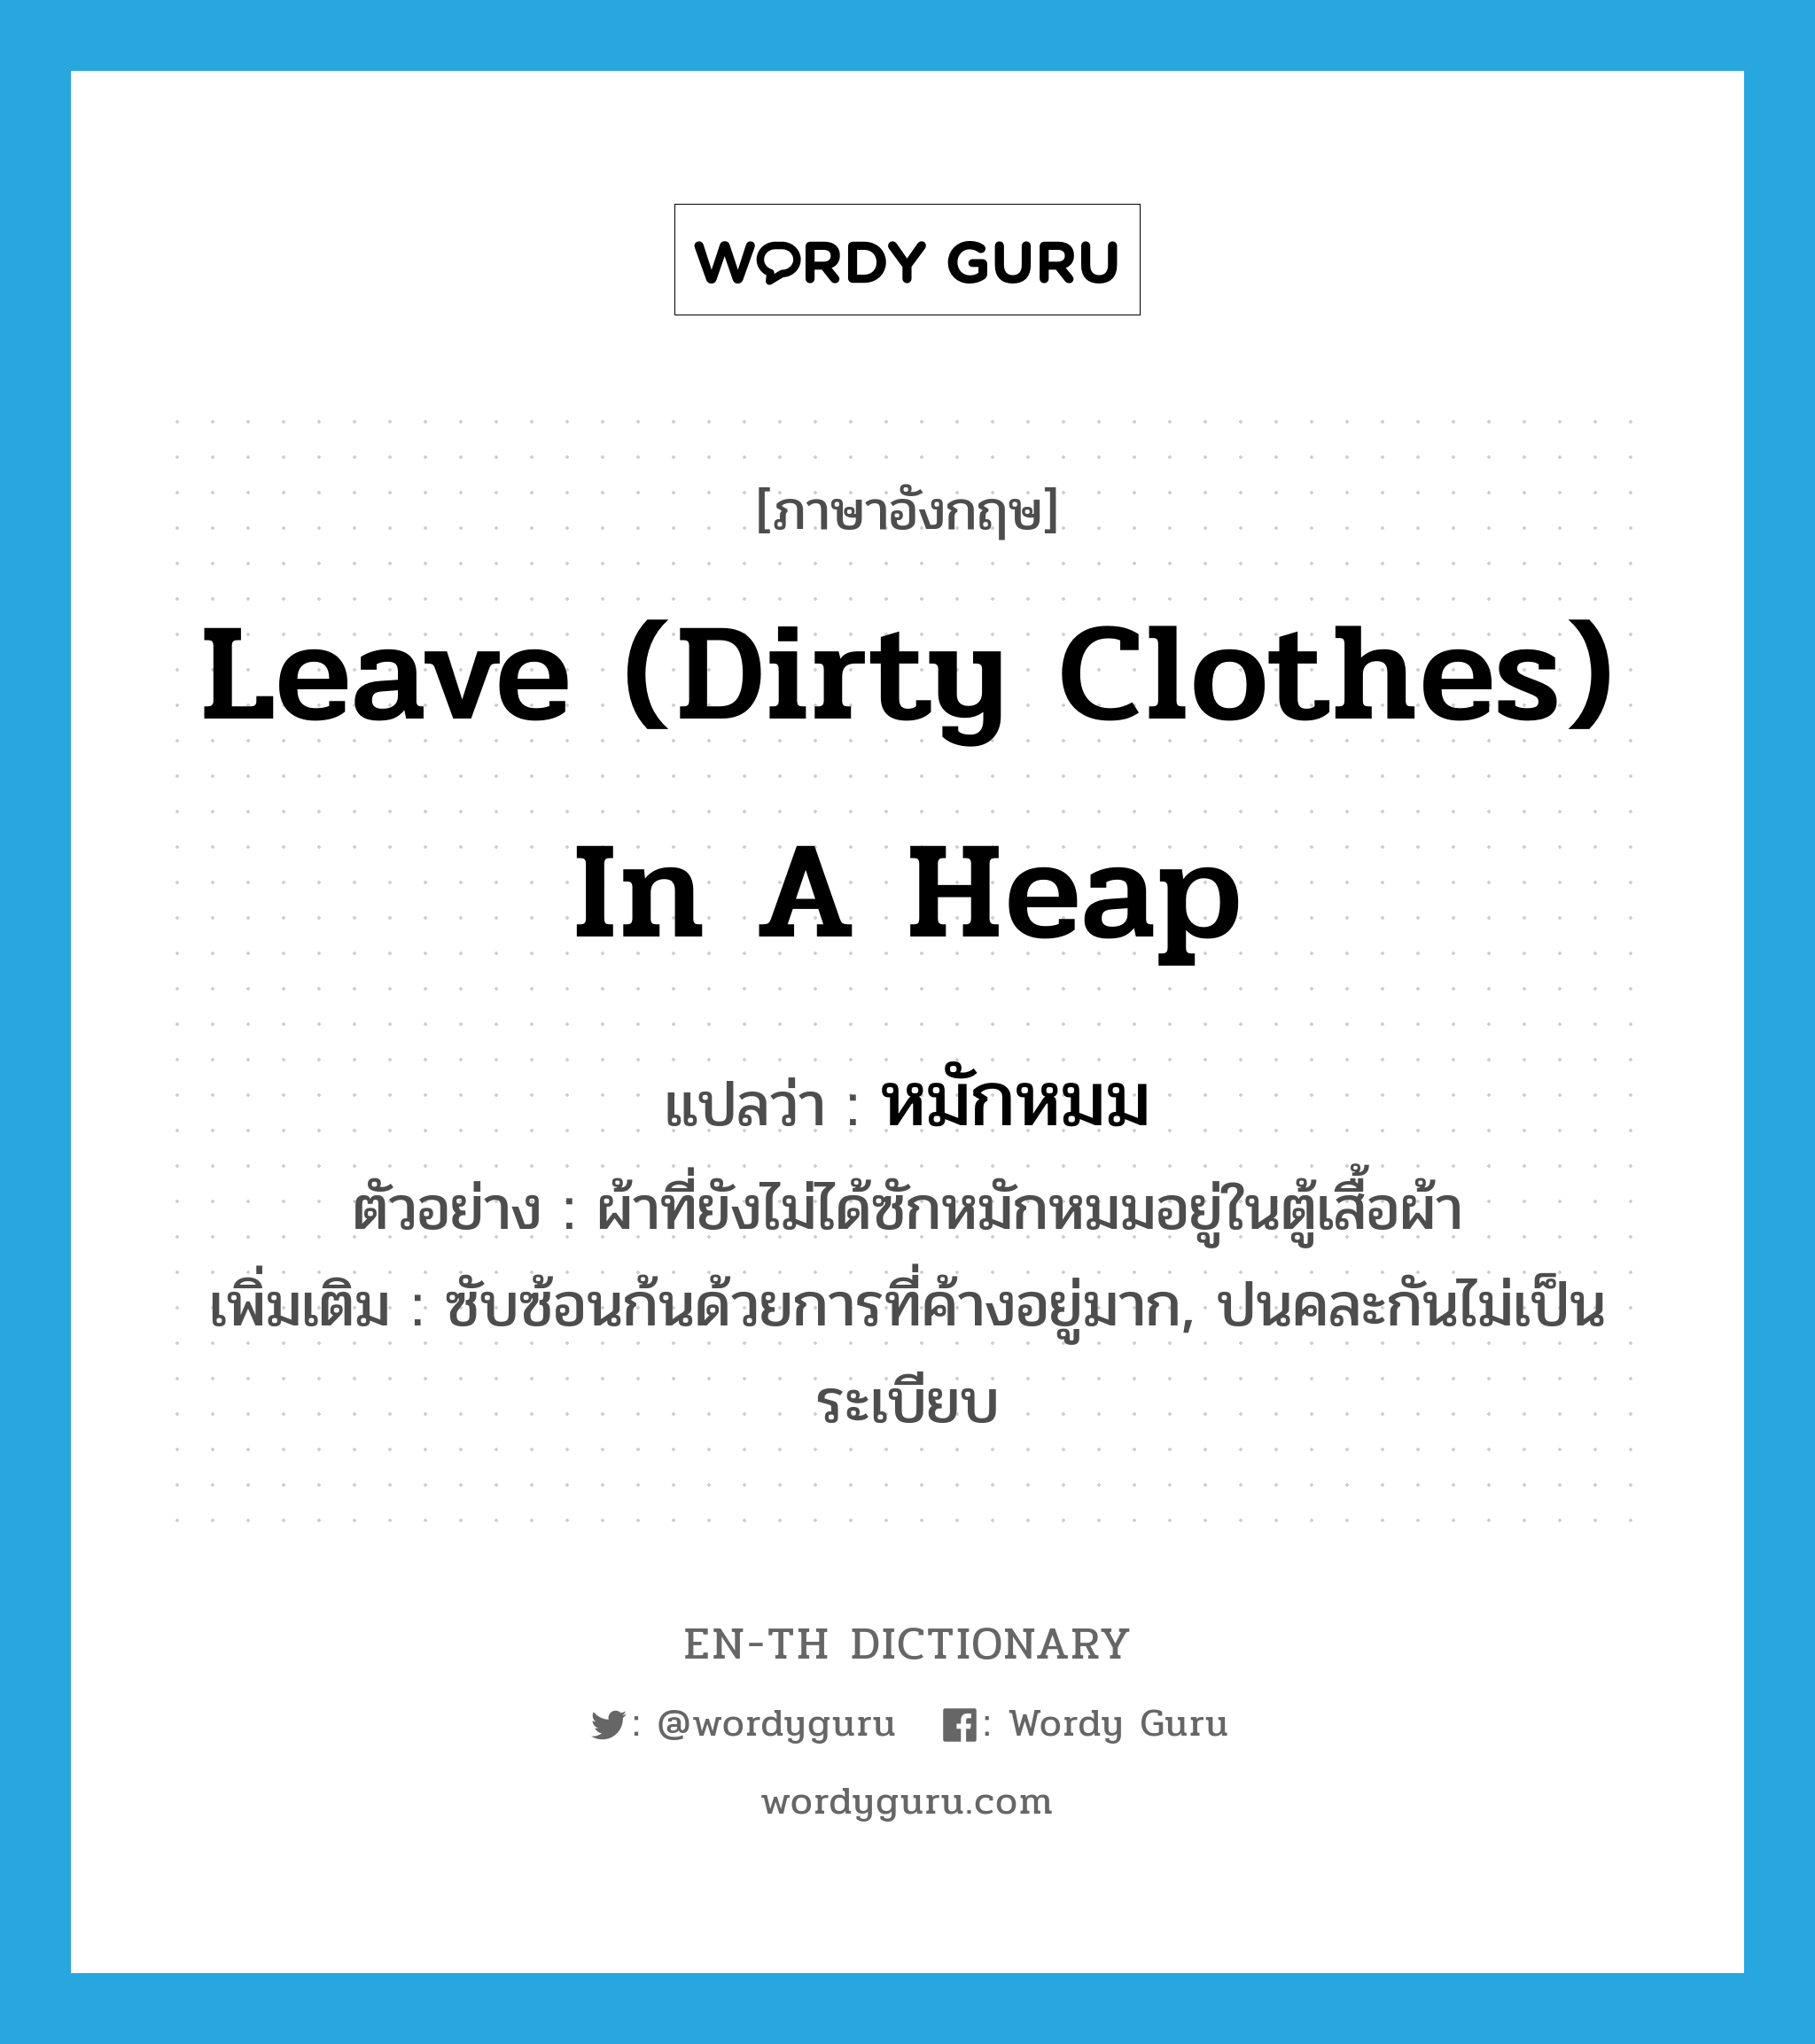 หมักหมม ภาษาอังกฤษ?, คำศัพท์ภาษาอังกฤษ หมักหมม แปลว่า leave (dirty clothes) in a heap ประเภท V ตัวอย่าง ผ้าที่ยังไม่ได้ซักหมักหมมอยู่ในตู้เสื้อผ้า เพิ่มเติม ซับซ้อนก้นด้วยการที่ค้างอยู่มาก, ปนคละกันไม่เป็นระเบียบ หมวด V